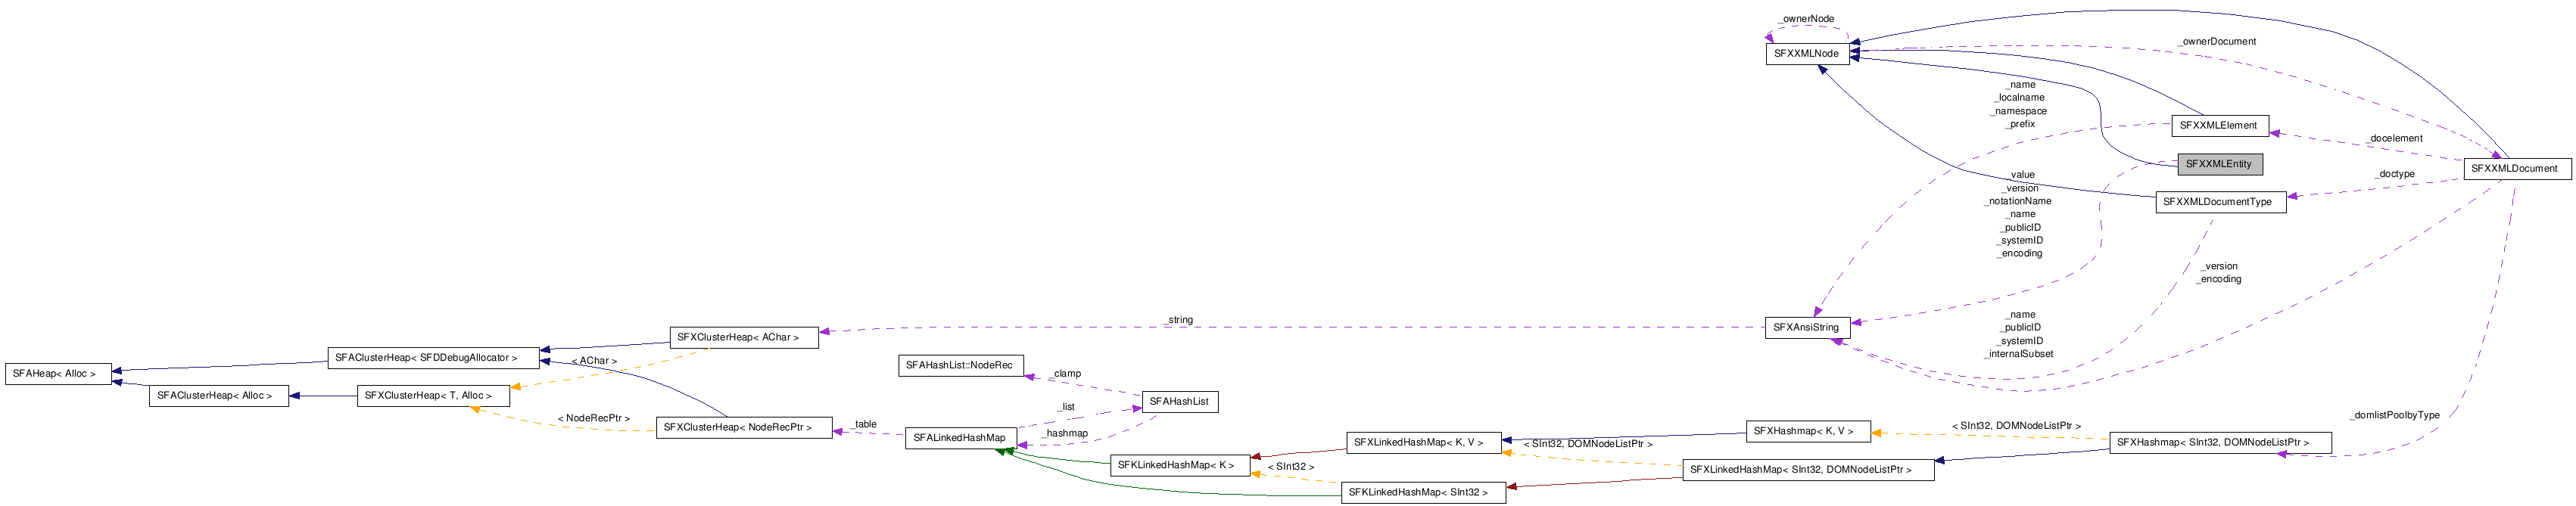  Collaboration diagram of SFXXMLEntityClass